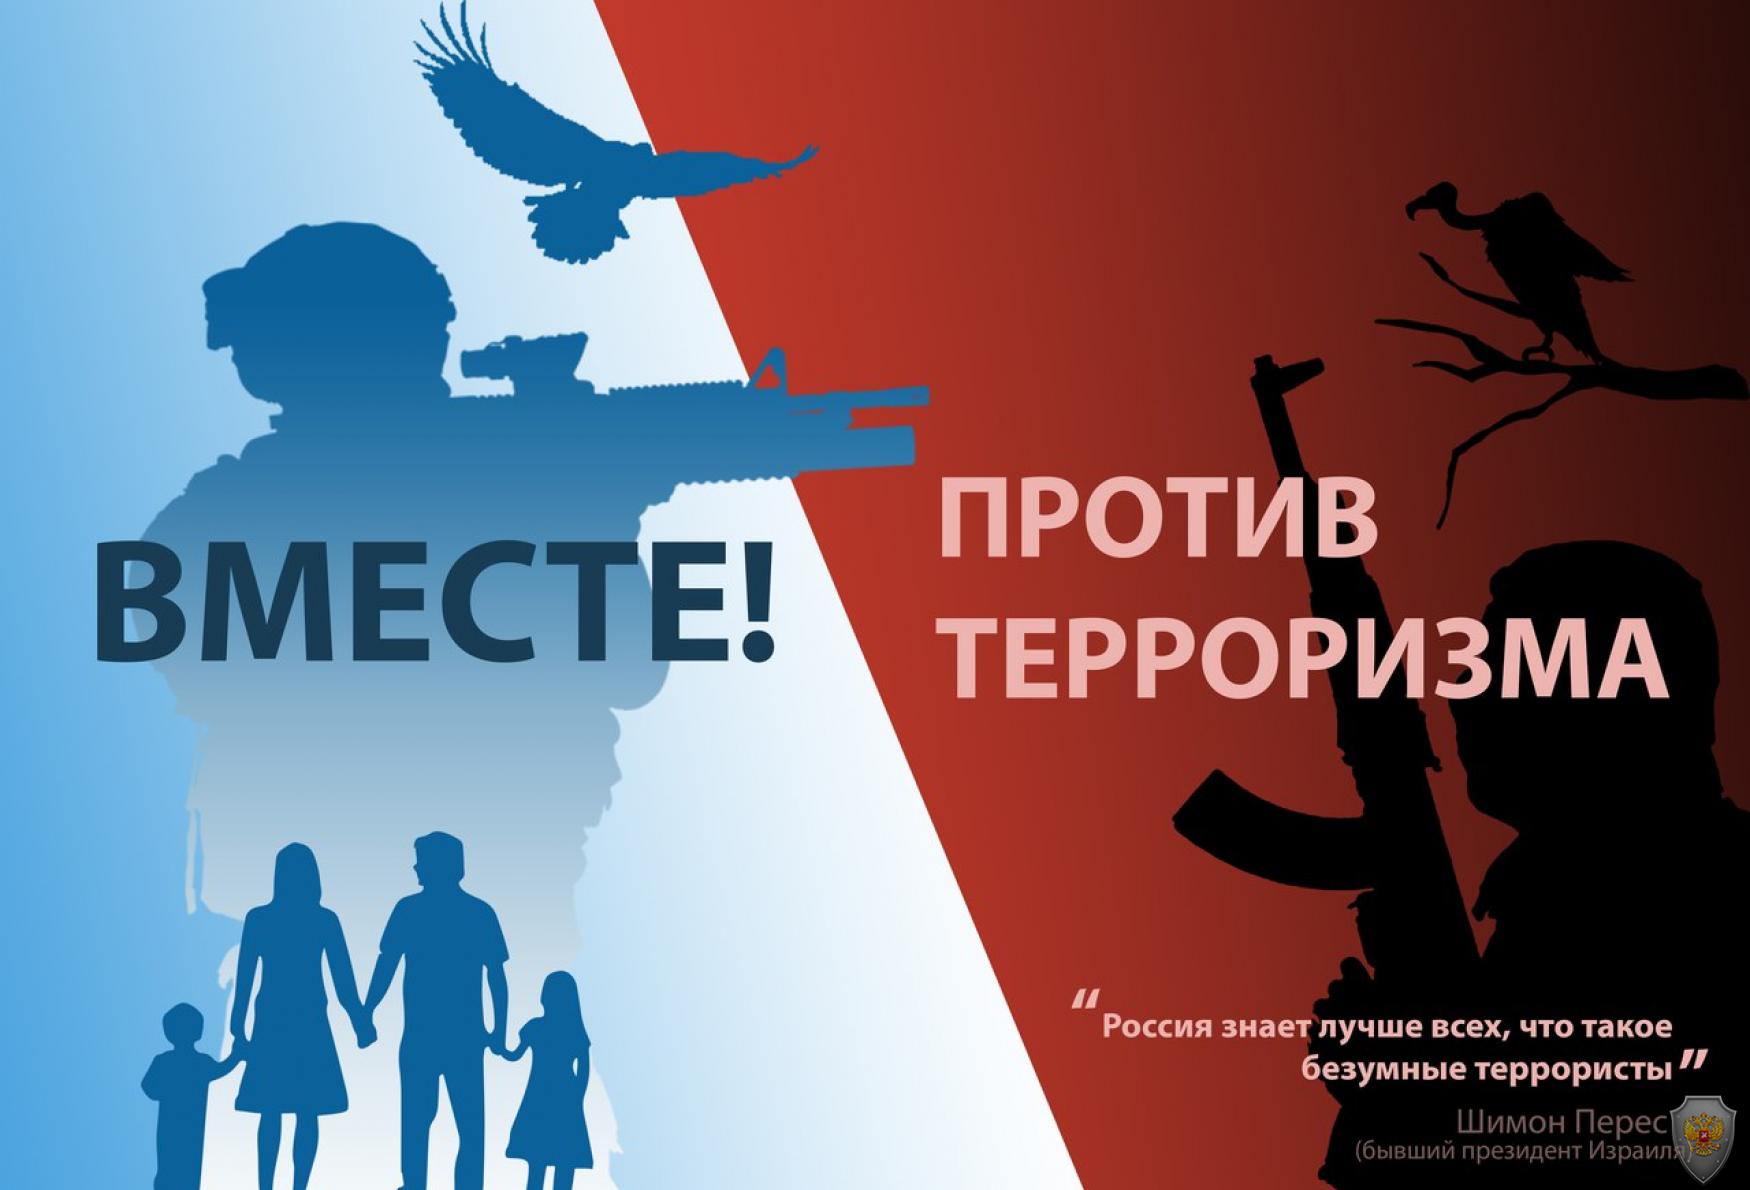 Прошел конкурс электронных плакатов «Мы против терроризма!»